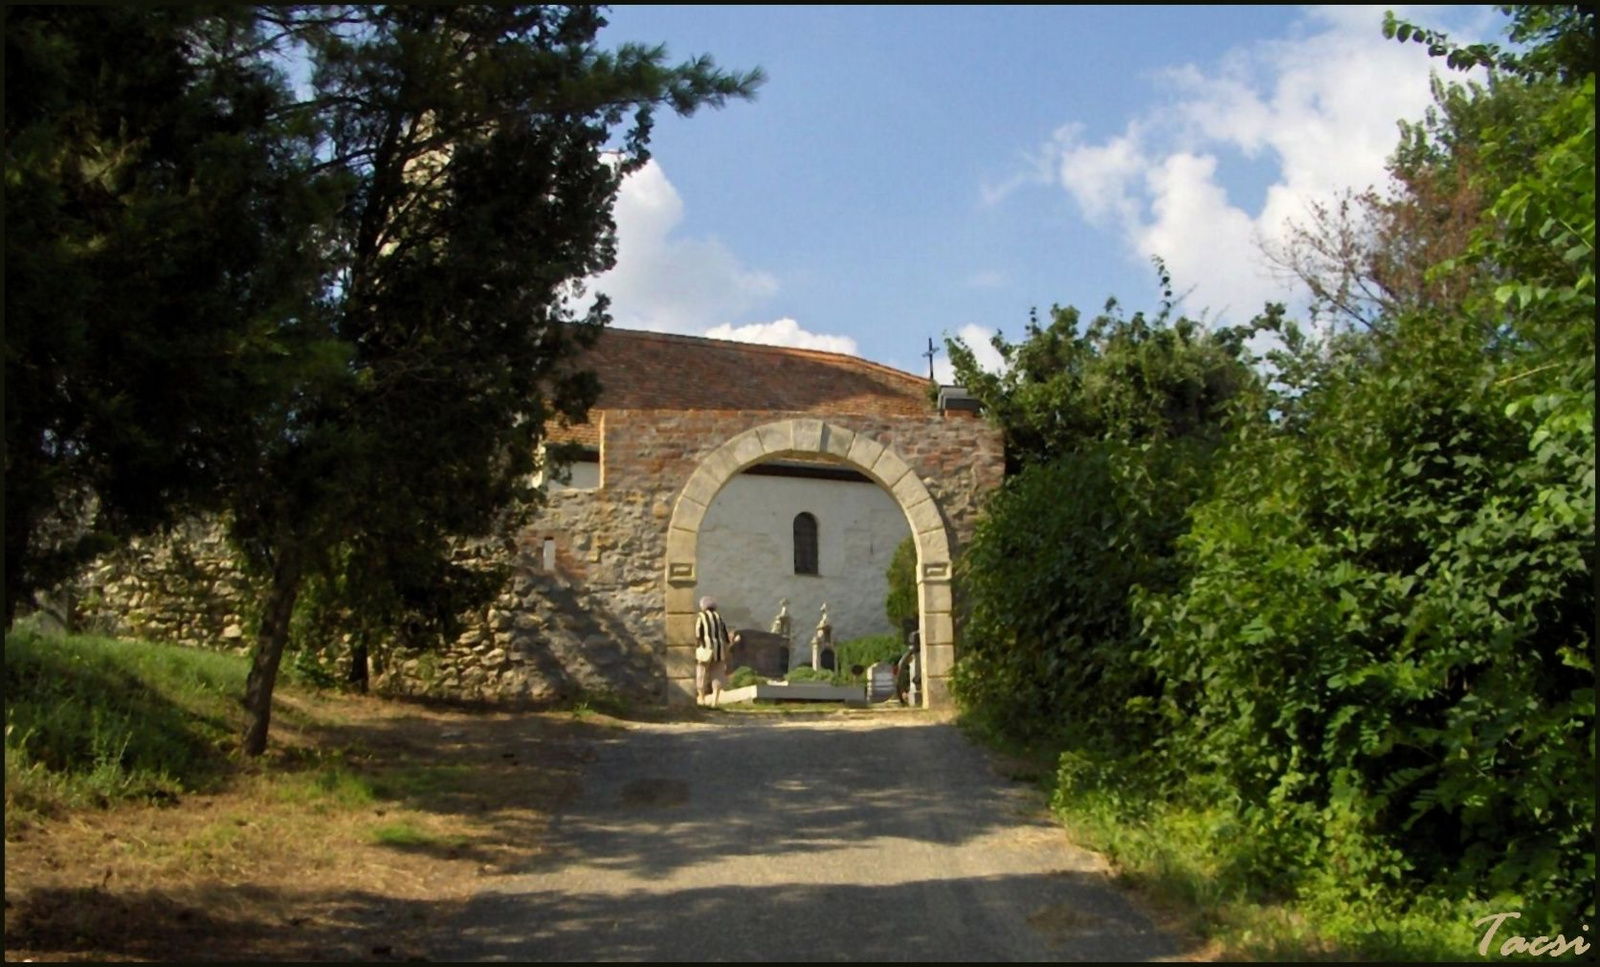 Balfi temető kőfala és kosáríves kapuja